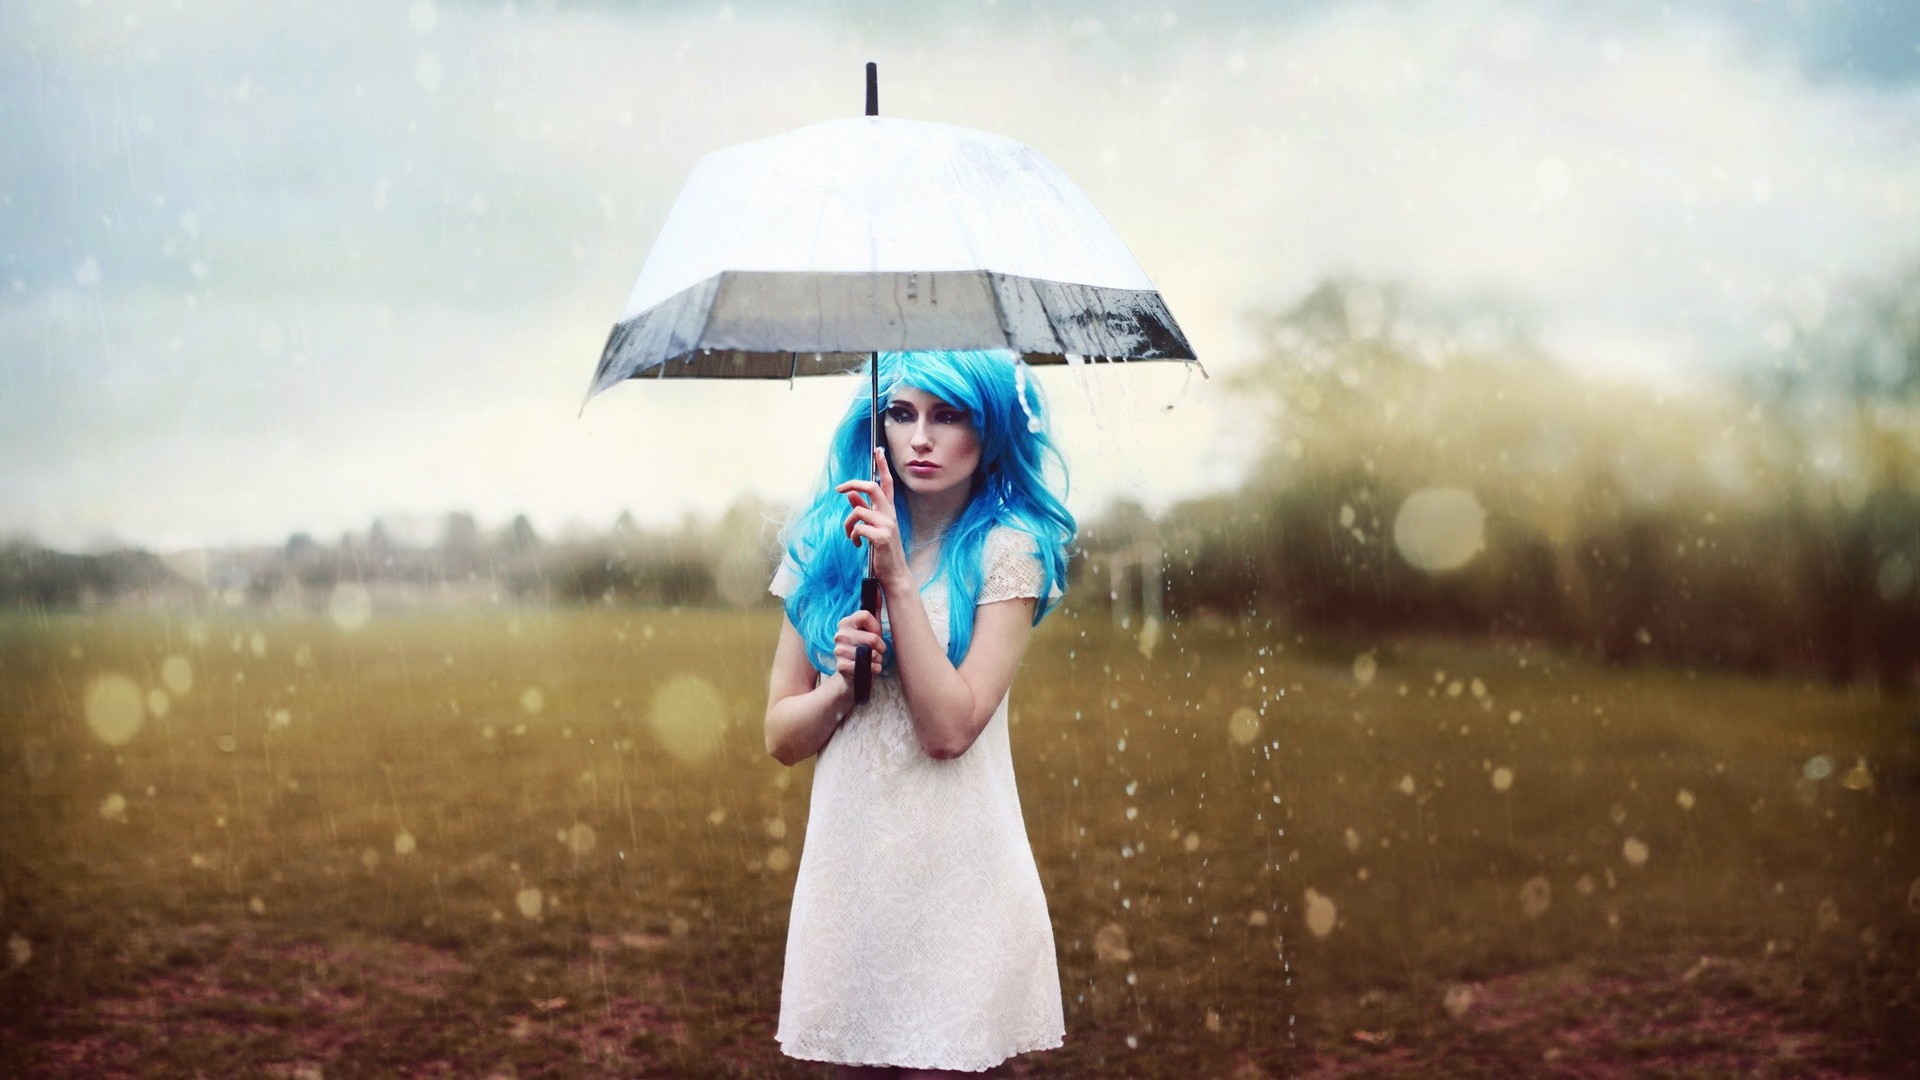 Синеволосая девушка под белым зонтом